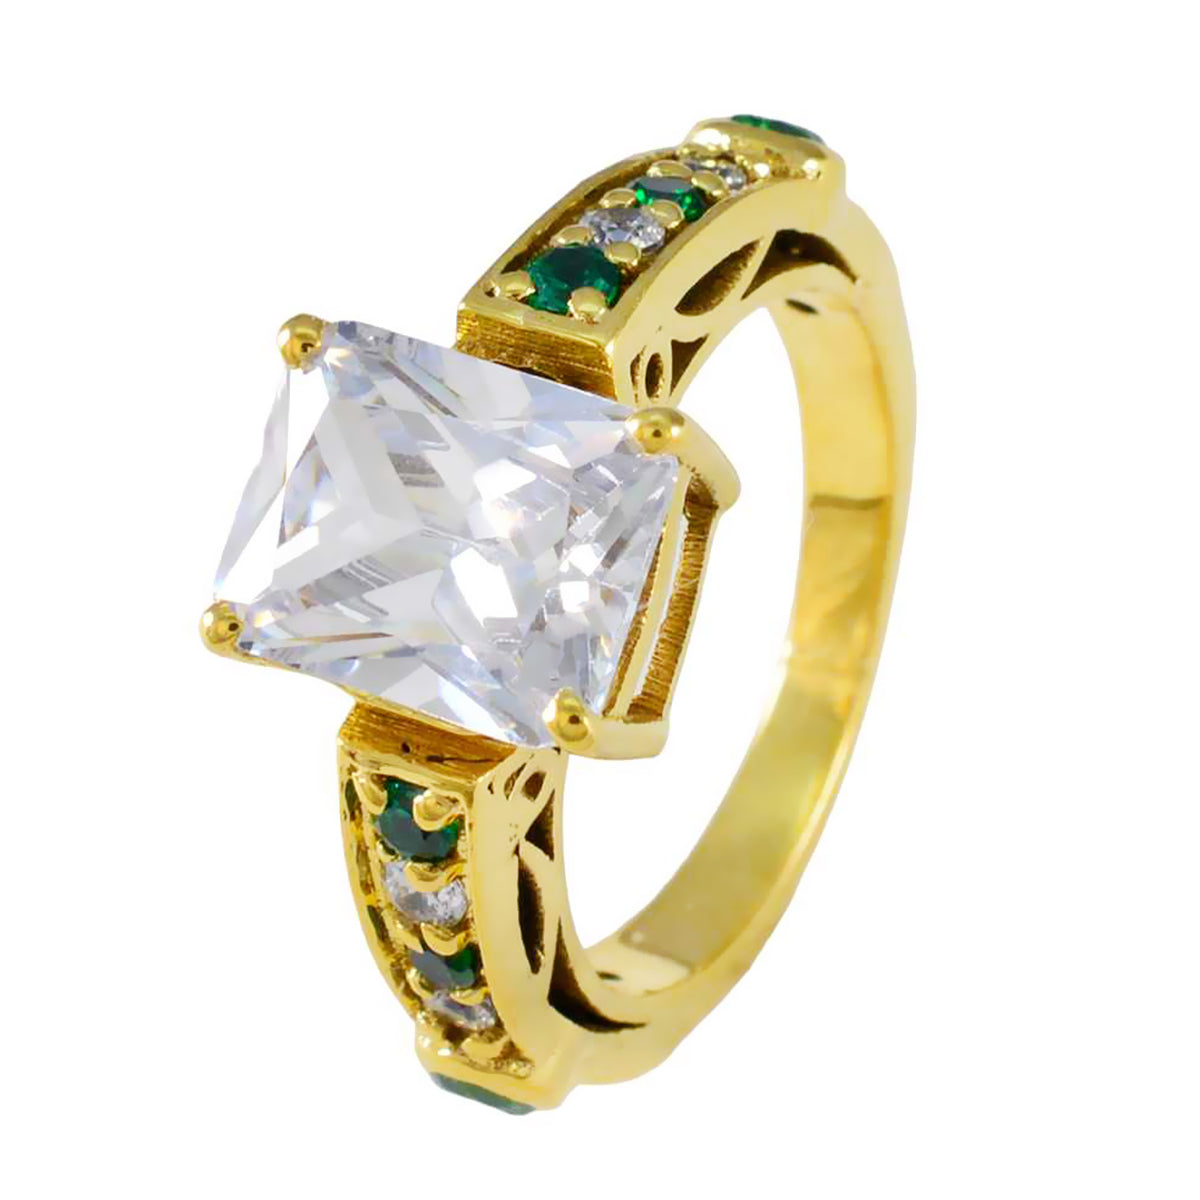 riyo ursnygg silverring med gul guldplätering smaragd cz sten oktagon form stift inställning anpassade smycken julring